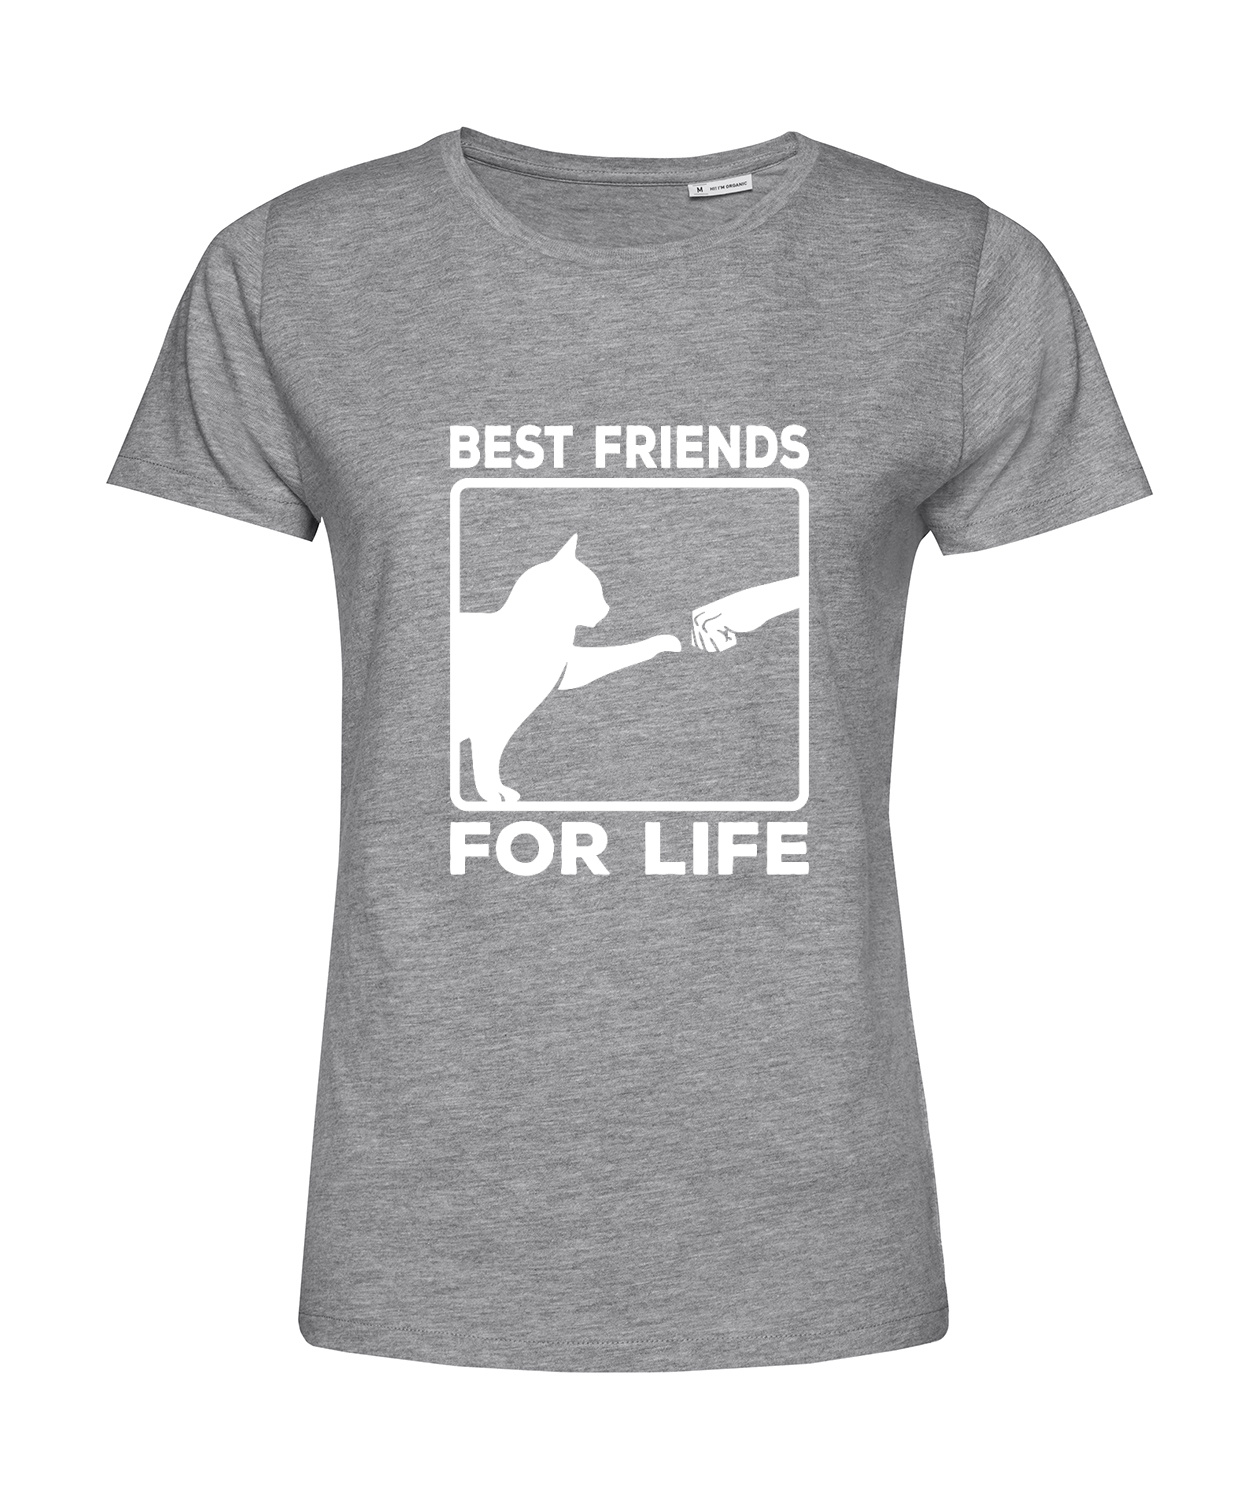 Nachhaltiges T-Shirt Damen Katzen - Best friends for life